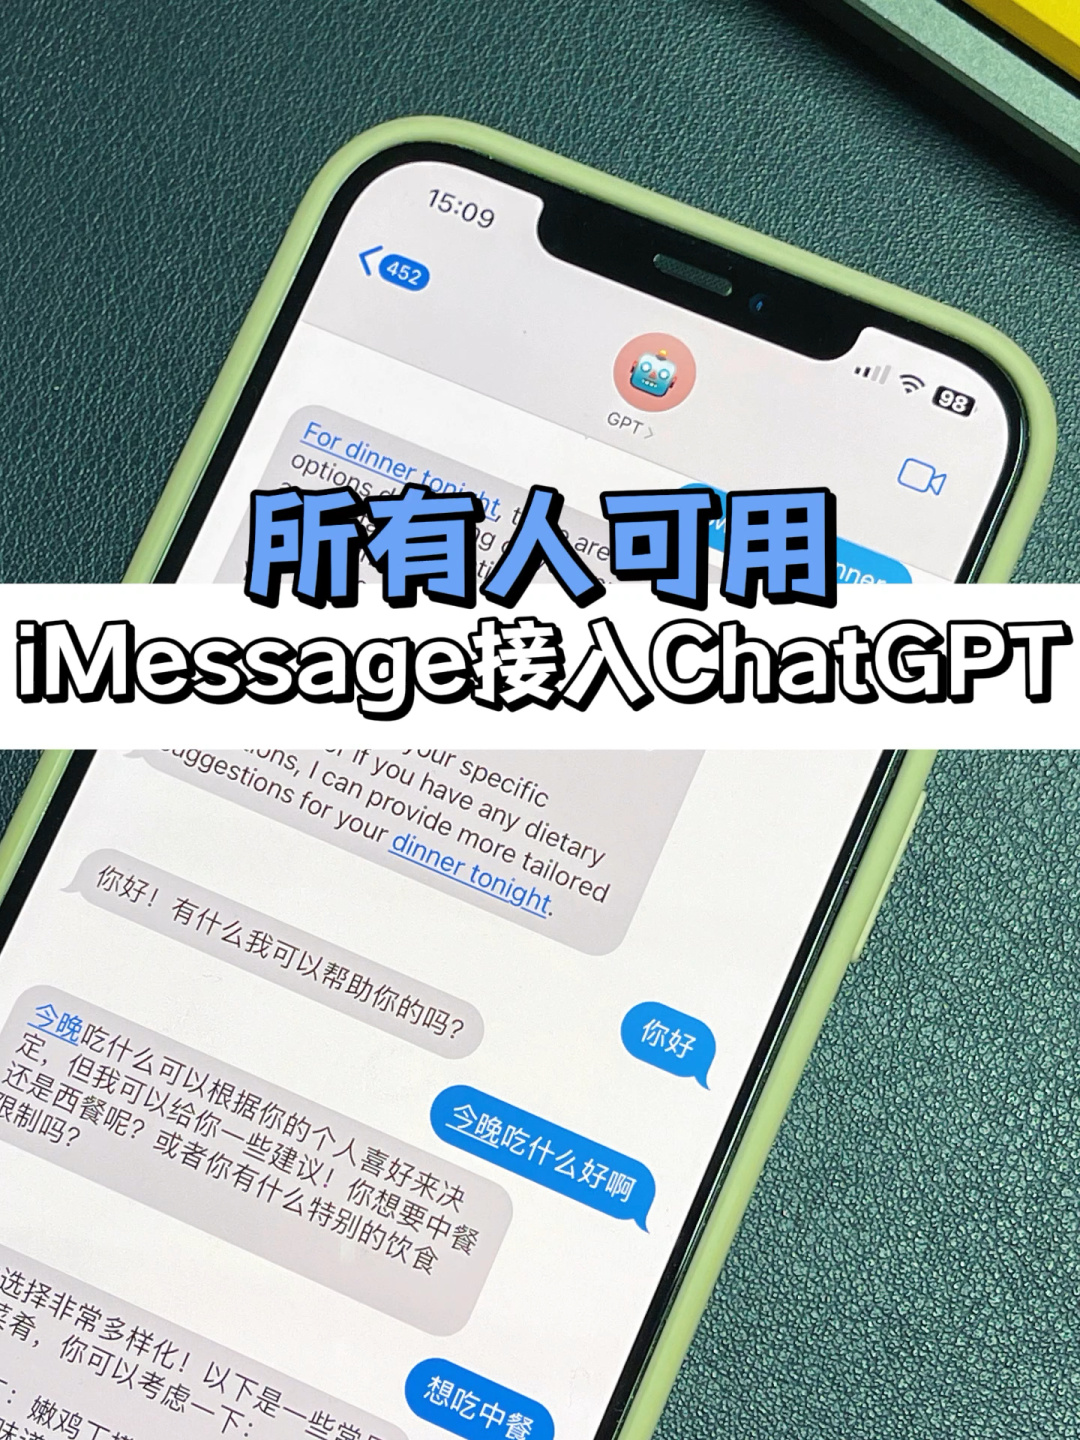 现在iMessage接入ChatGPT了？